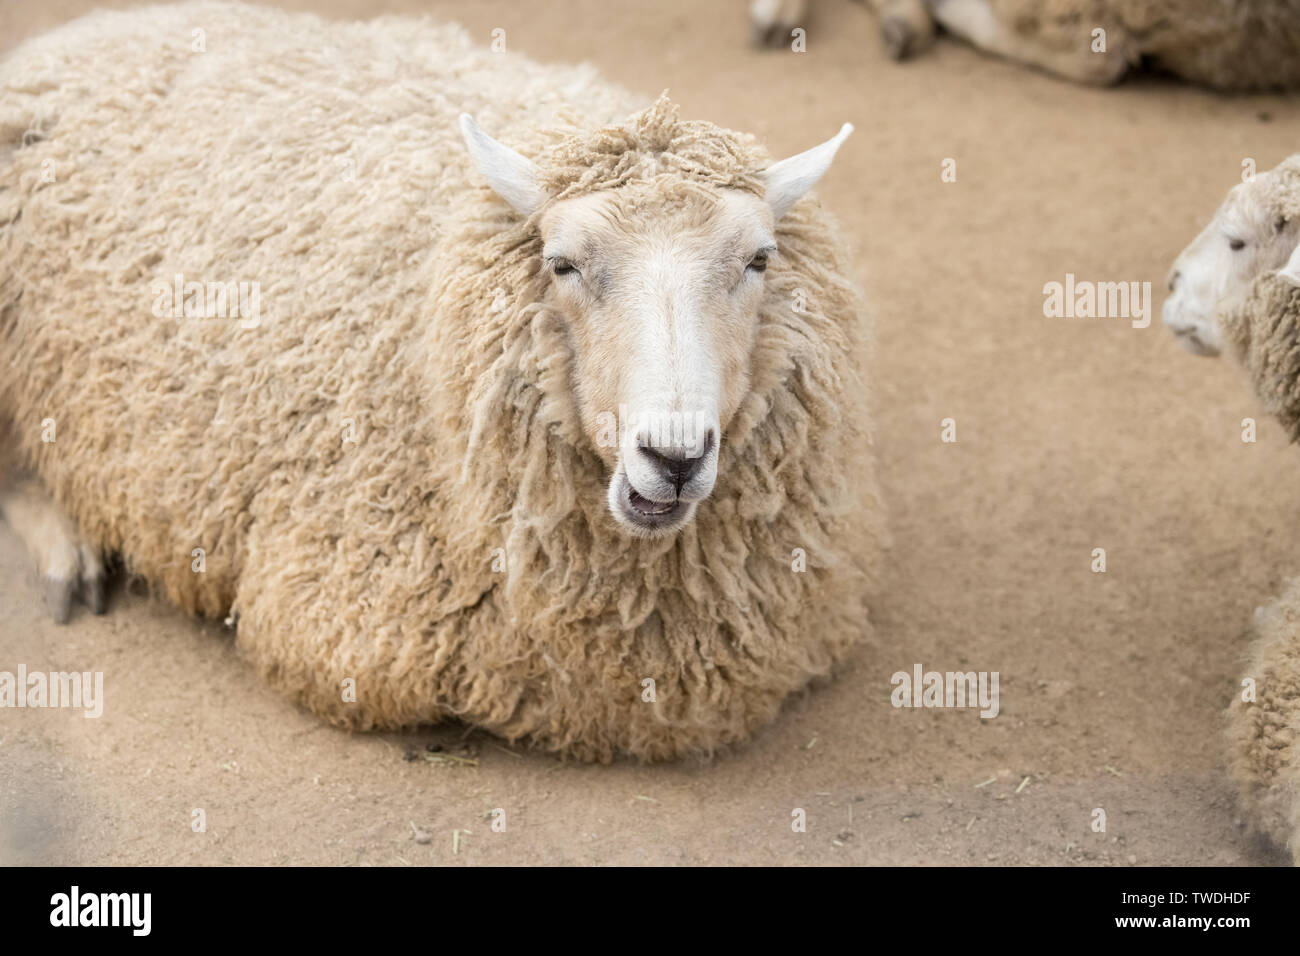 Brebis Corriedale sont utilisés aussi bien dans la production de laine et de viande Banque D'Images